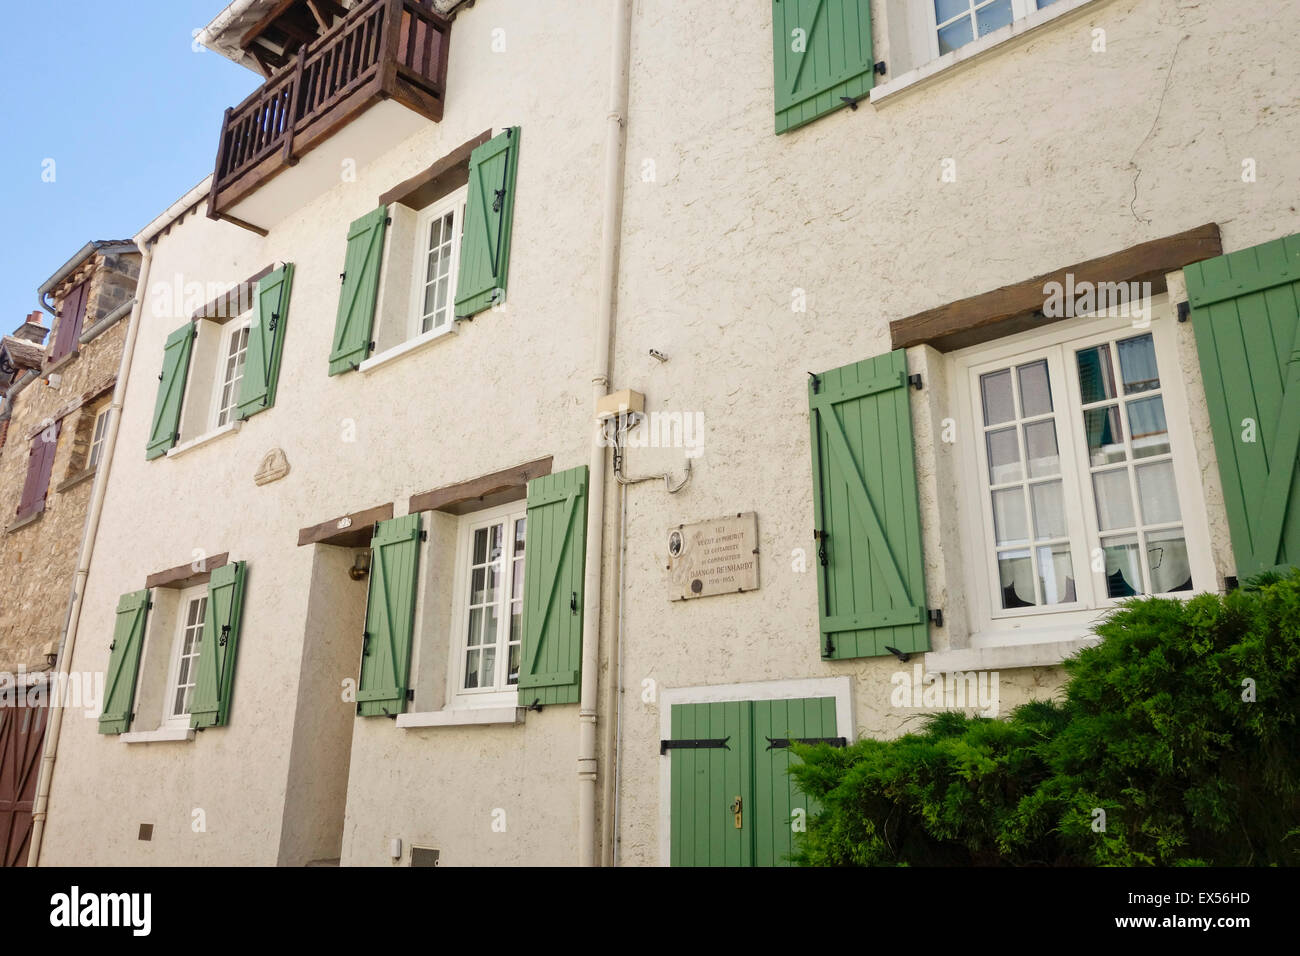 Maison où Django Reinhardt, guitariste et compositeur, vécut et mourut à Samois-sur-Seine, France. Banque D'Images